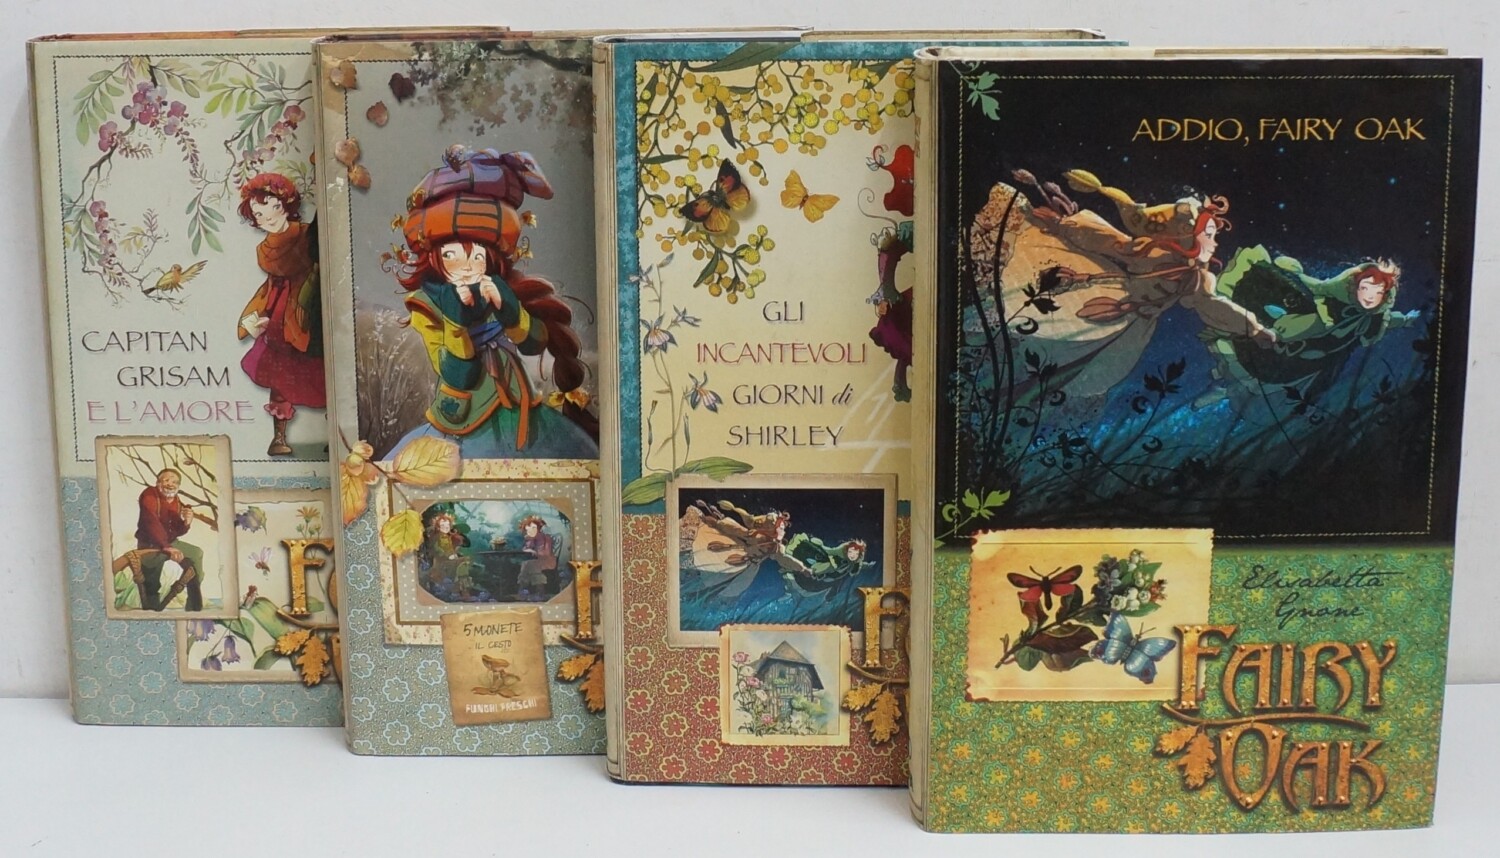 I Quattro Misteri di Fairy Oak di Elisabetta Gnone. Secondo Ciclo Completo  n. 4 volumi ed. De Agostini. Cartonato – Emporio di milo